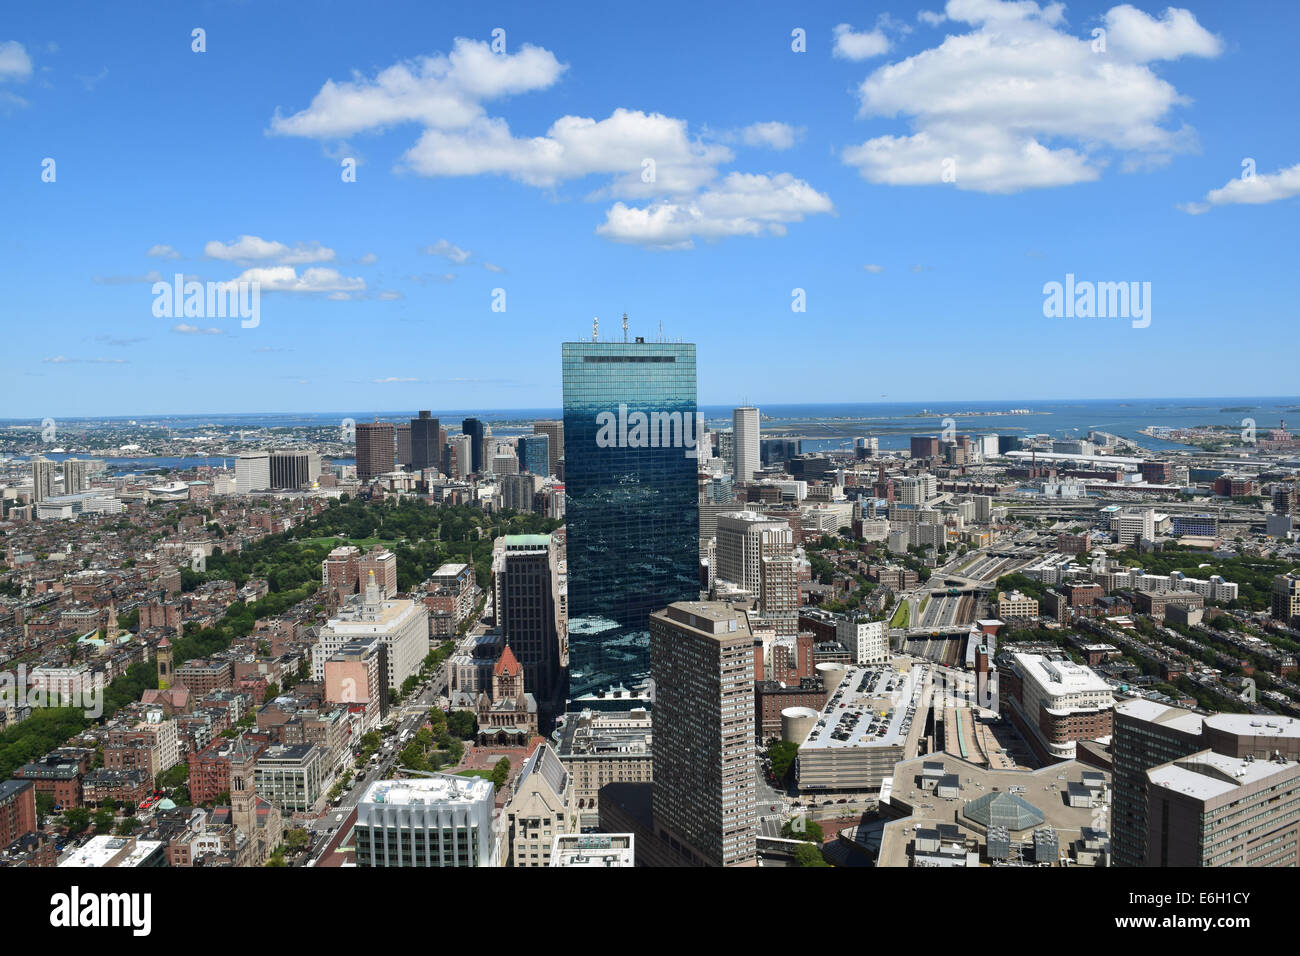 Aerial View of Boston, Massachusetts. Stock Photo